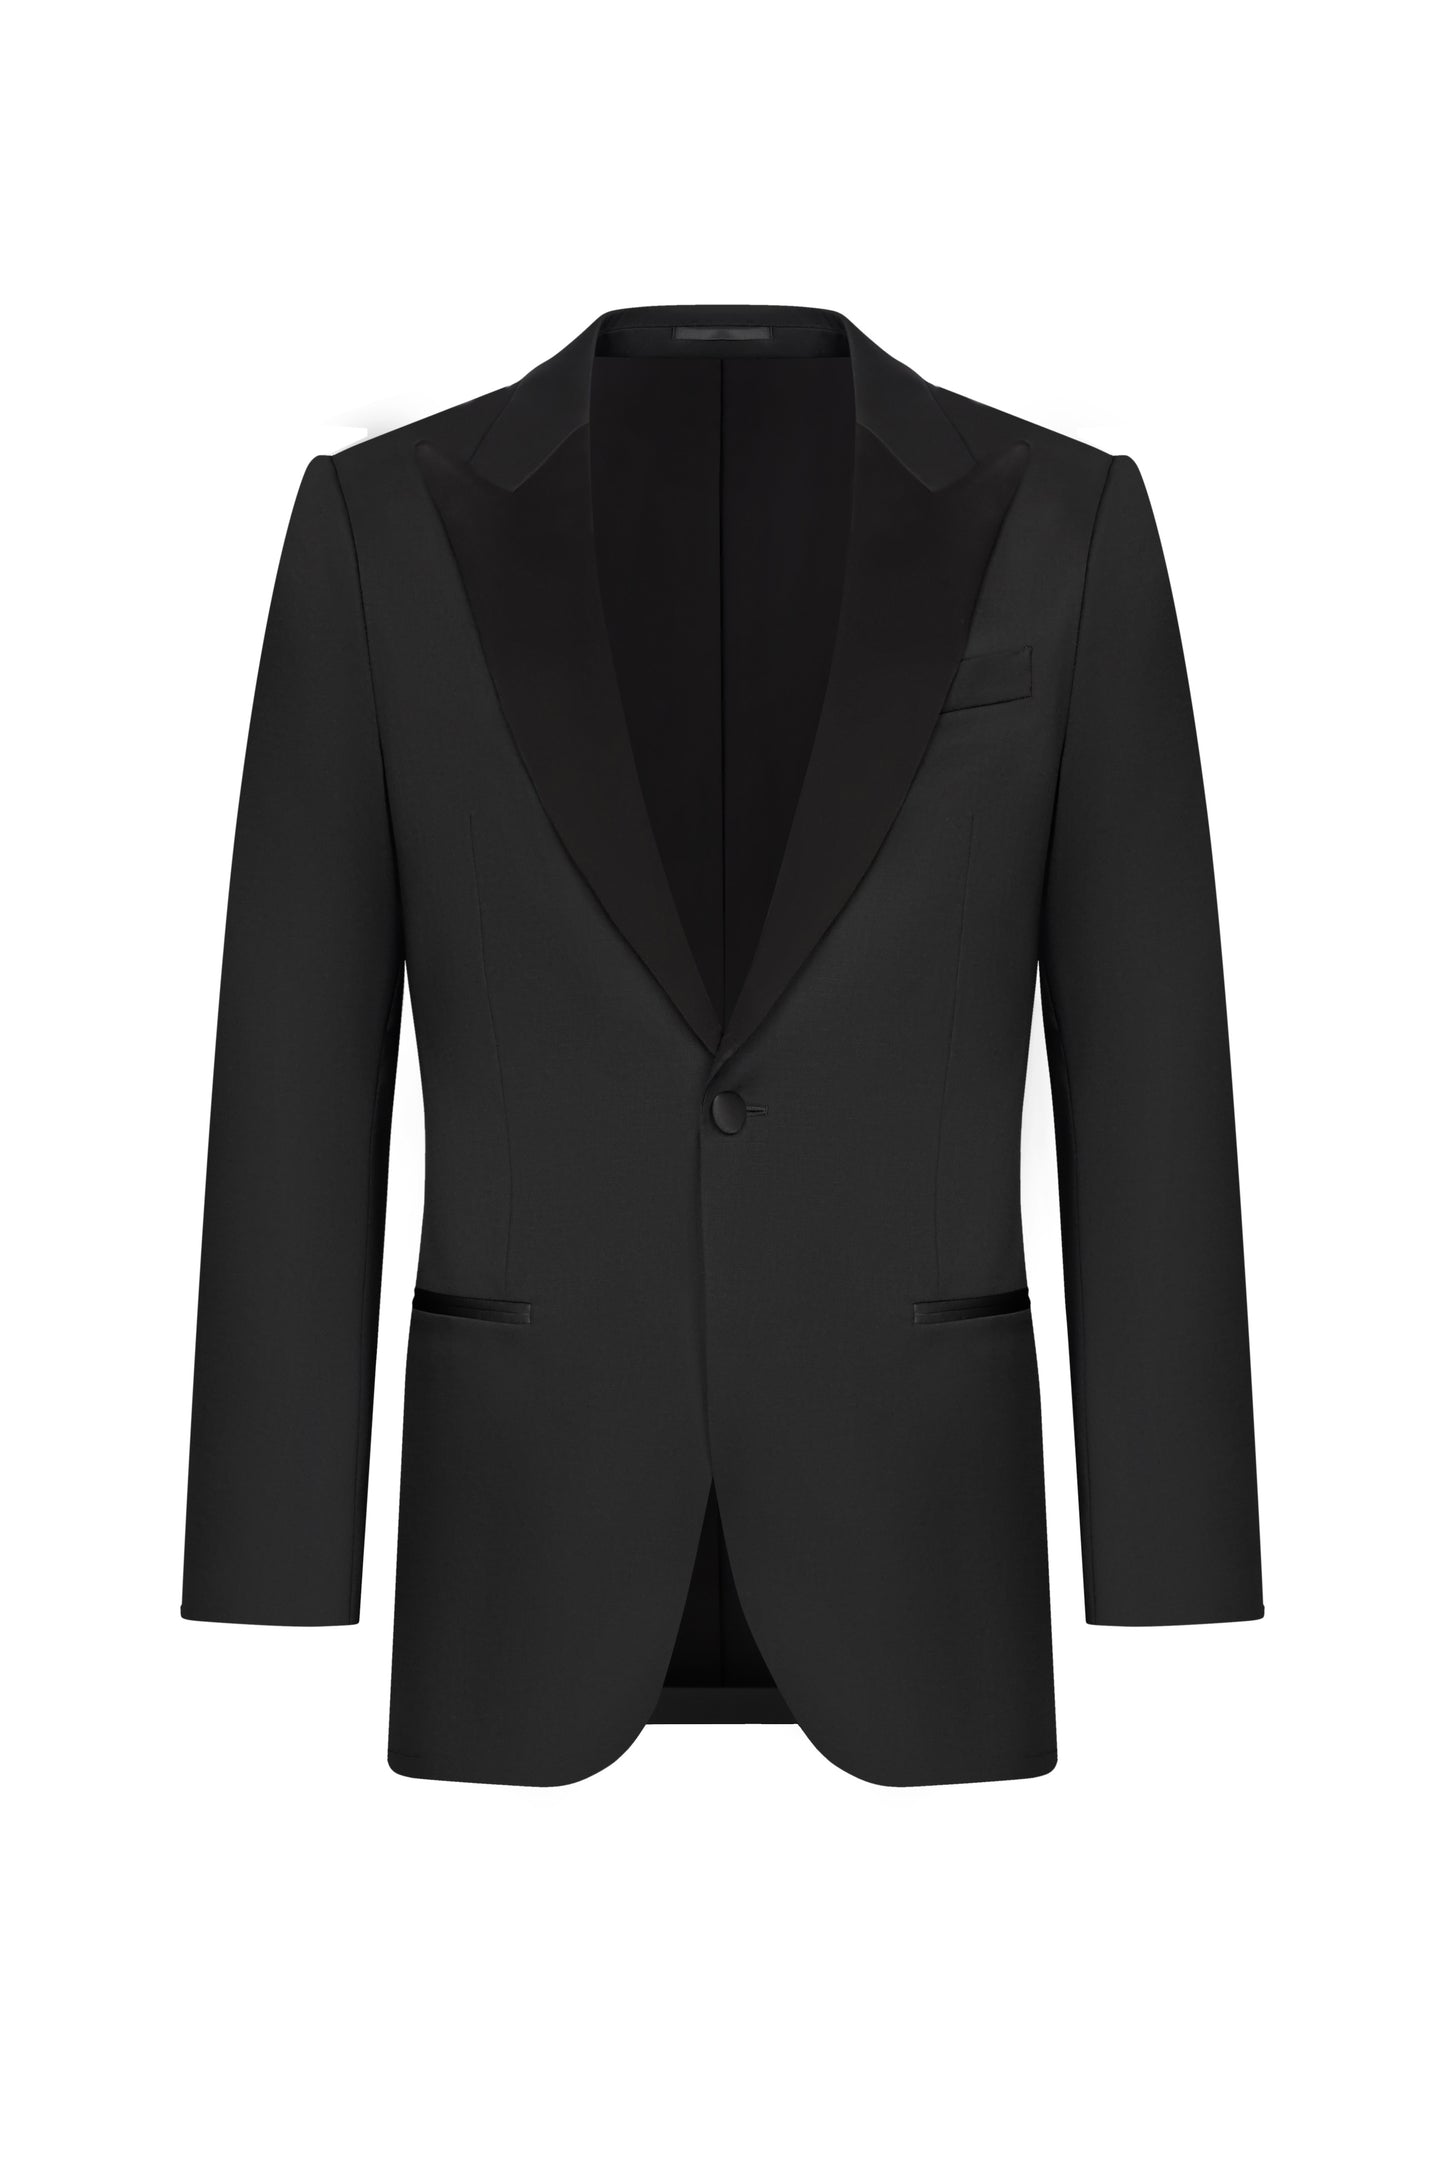 Black Twill Custom Tuxedo Suit